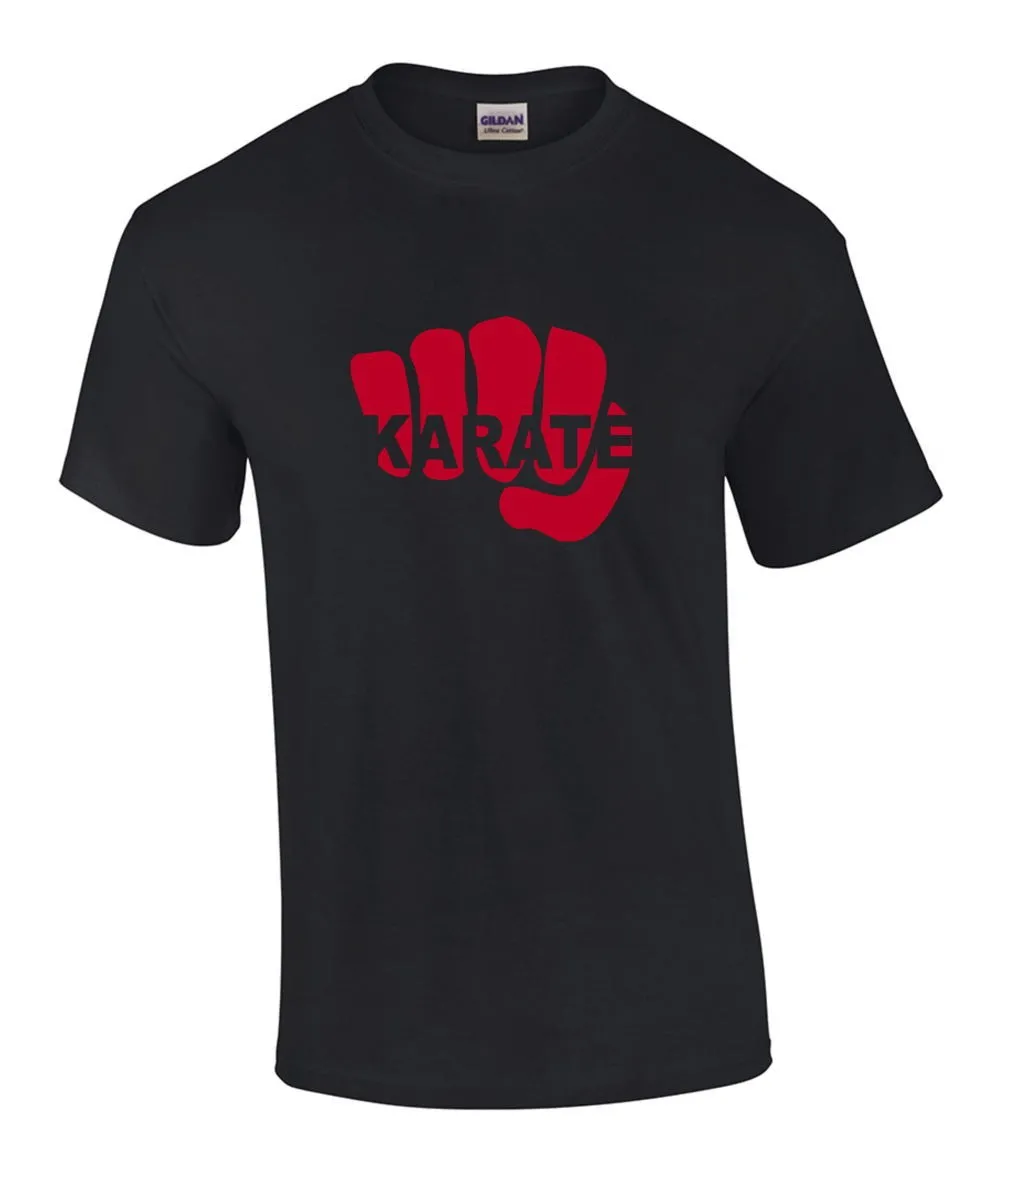 T-Shirt Karatevuist zwart